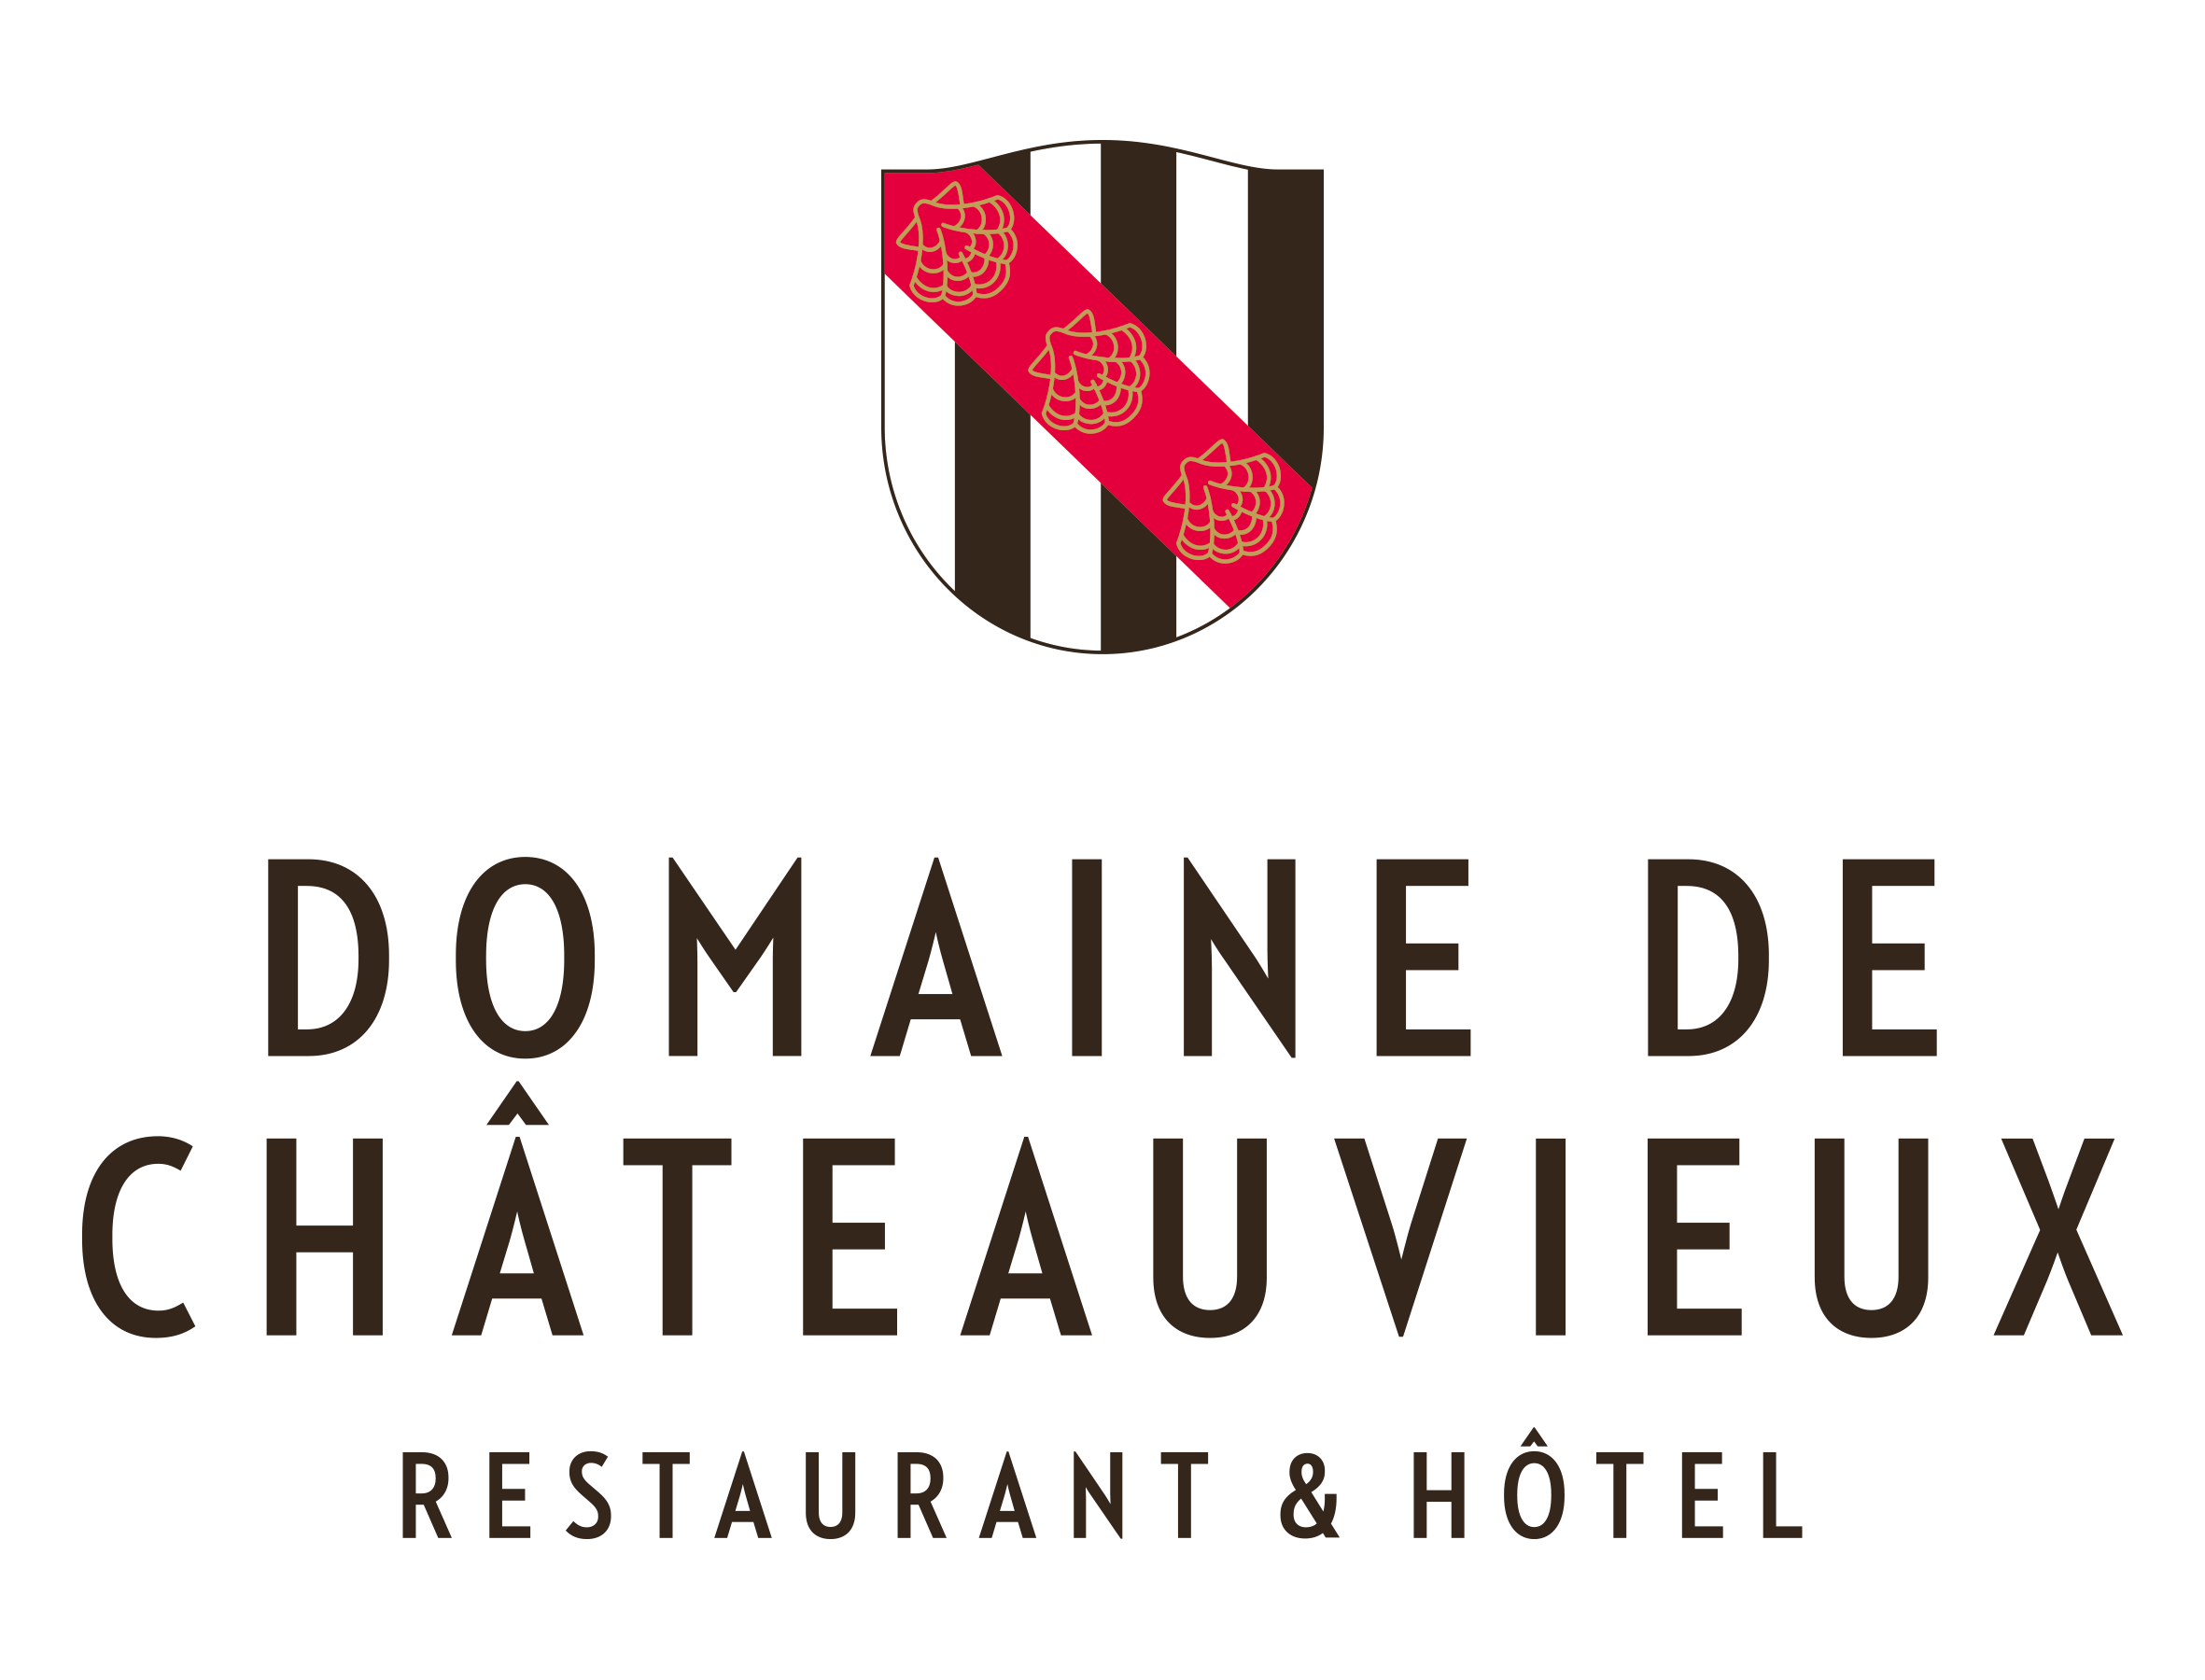 Domaine de Chateauvieux